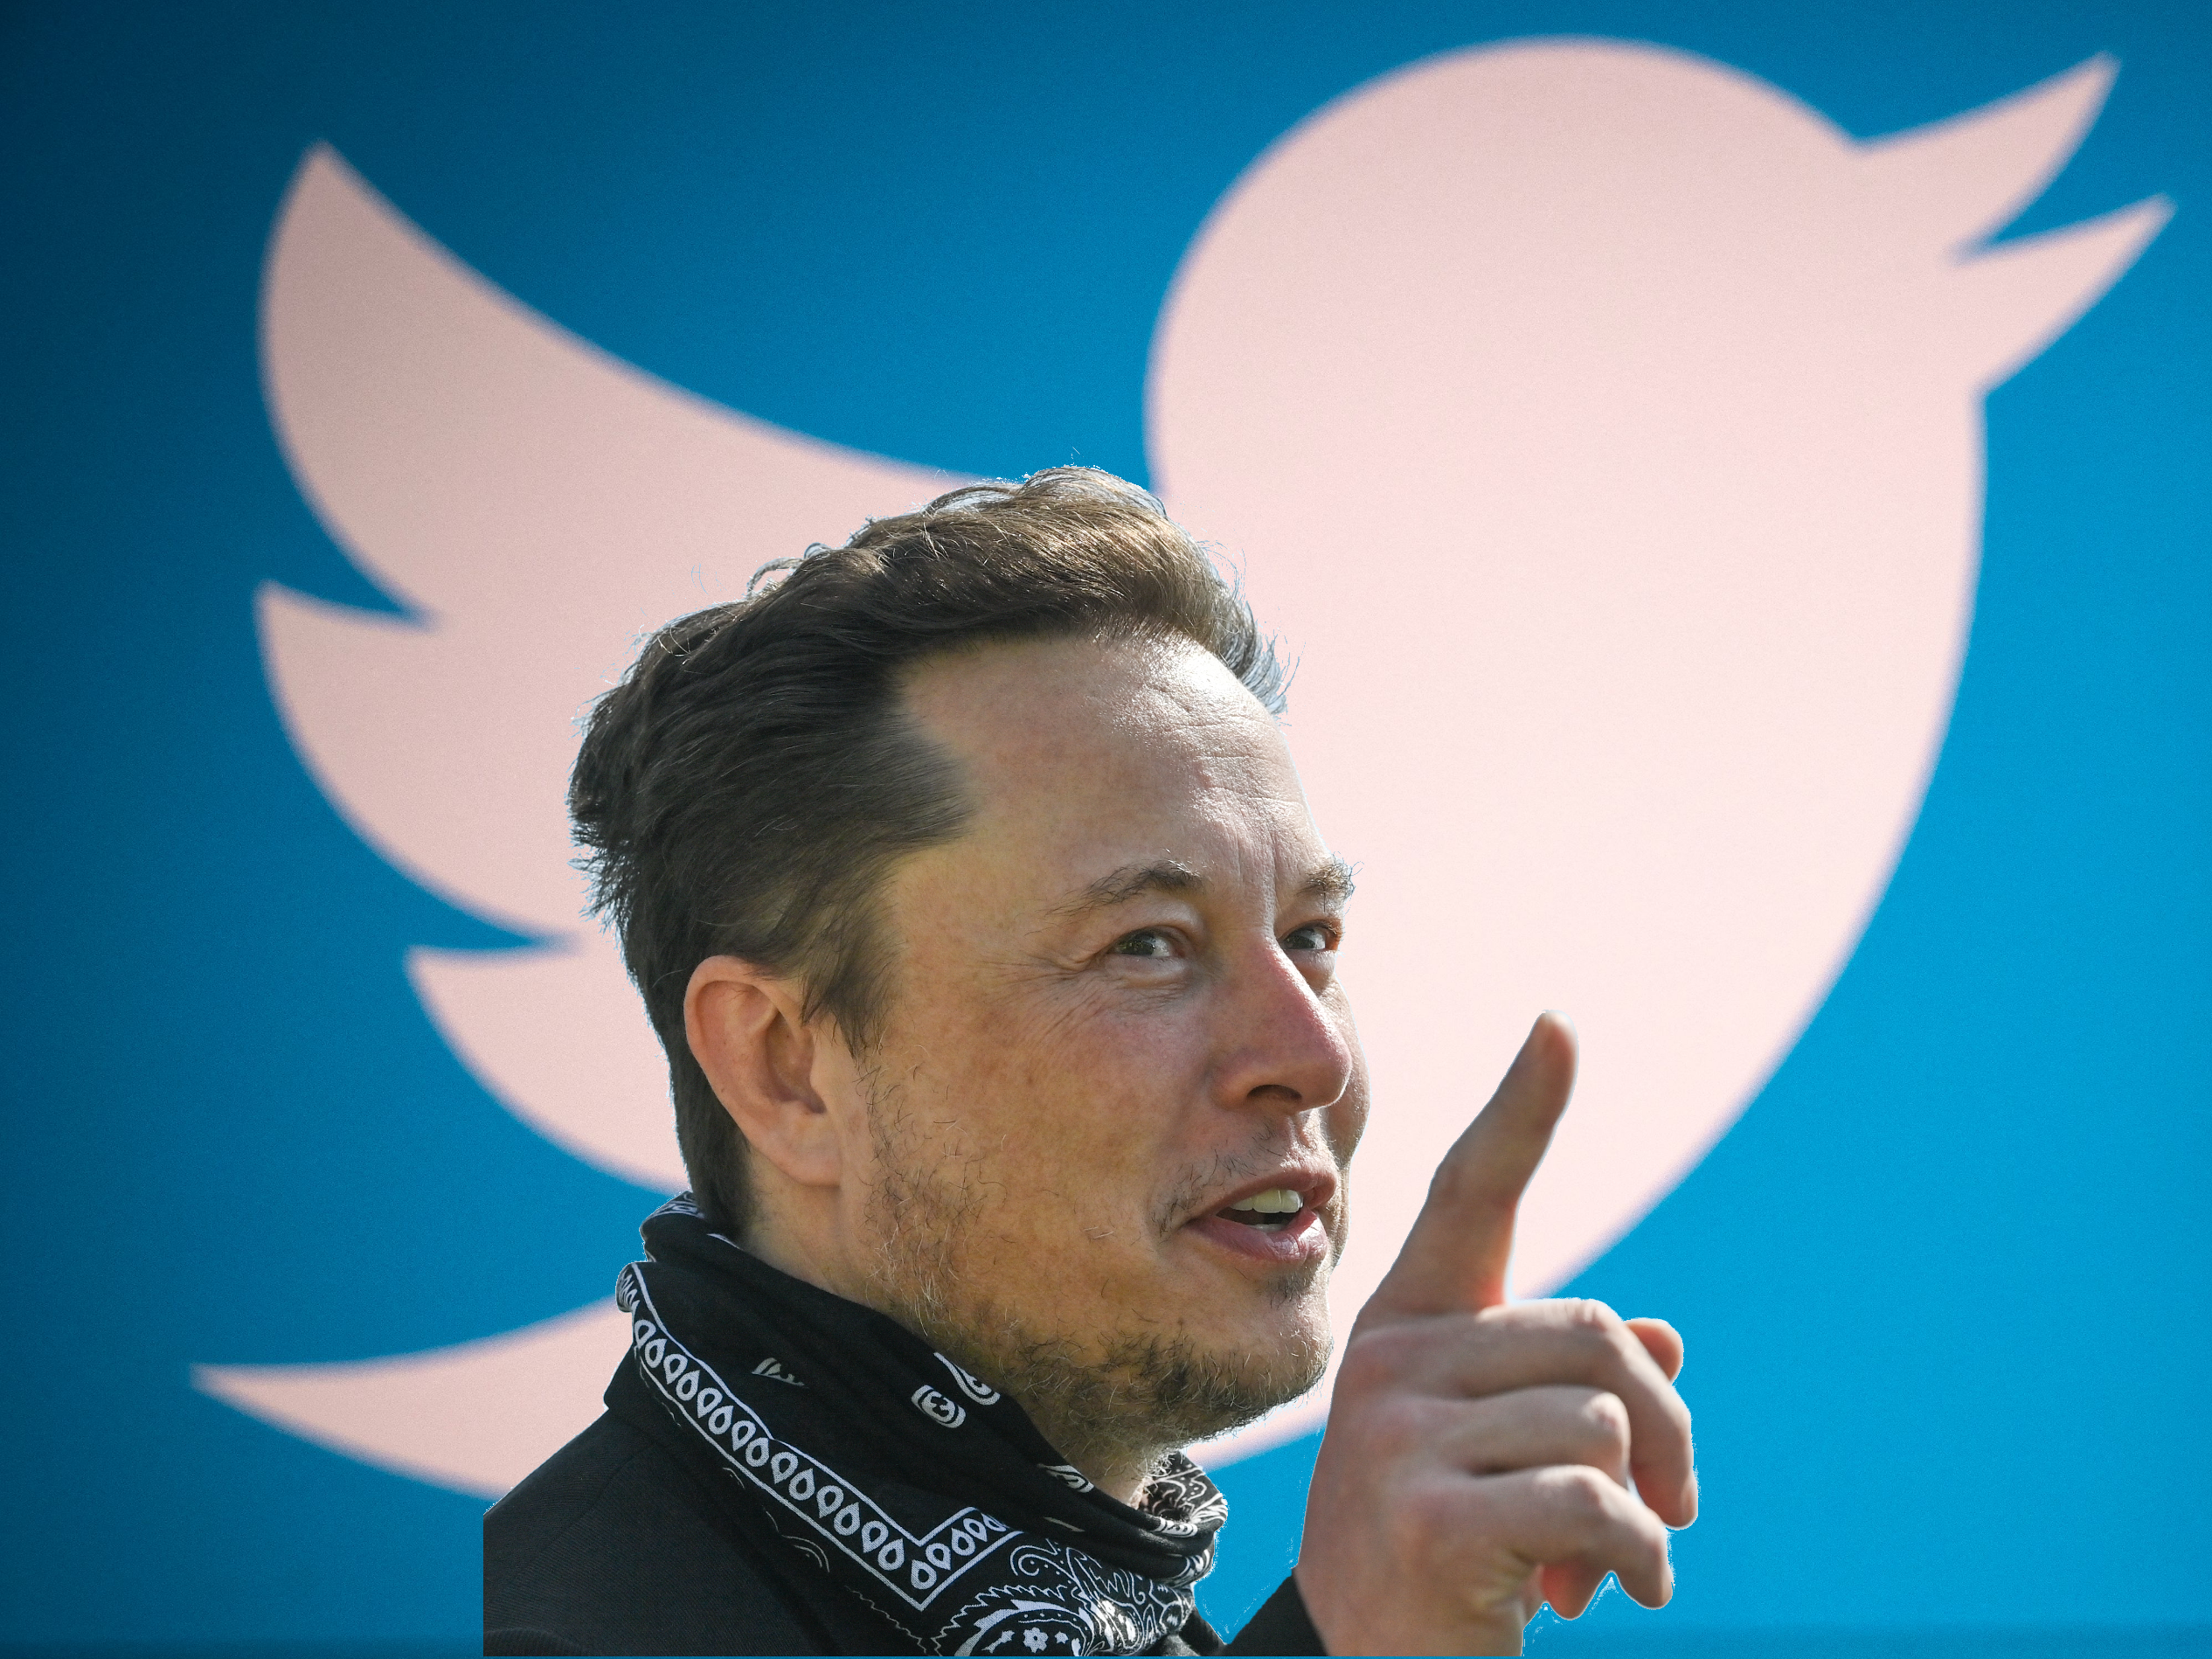 Parece que los intentos de Elon Musk de adquirir Twitter tendrán éxito, pero ¿por qué lo hace?